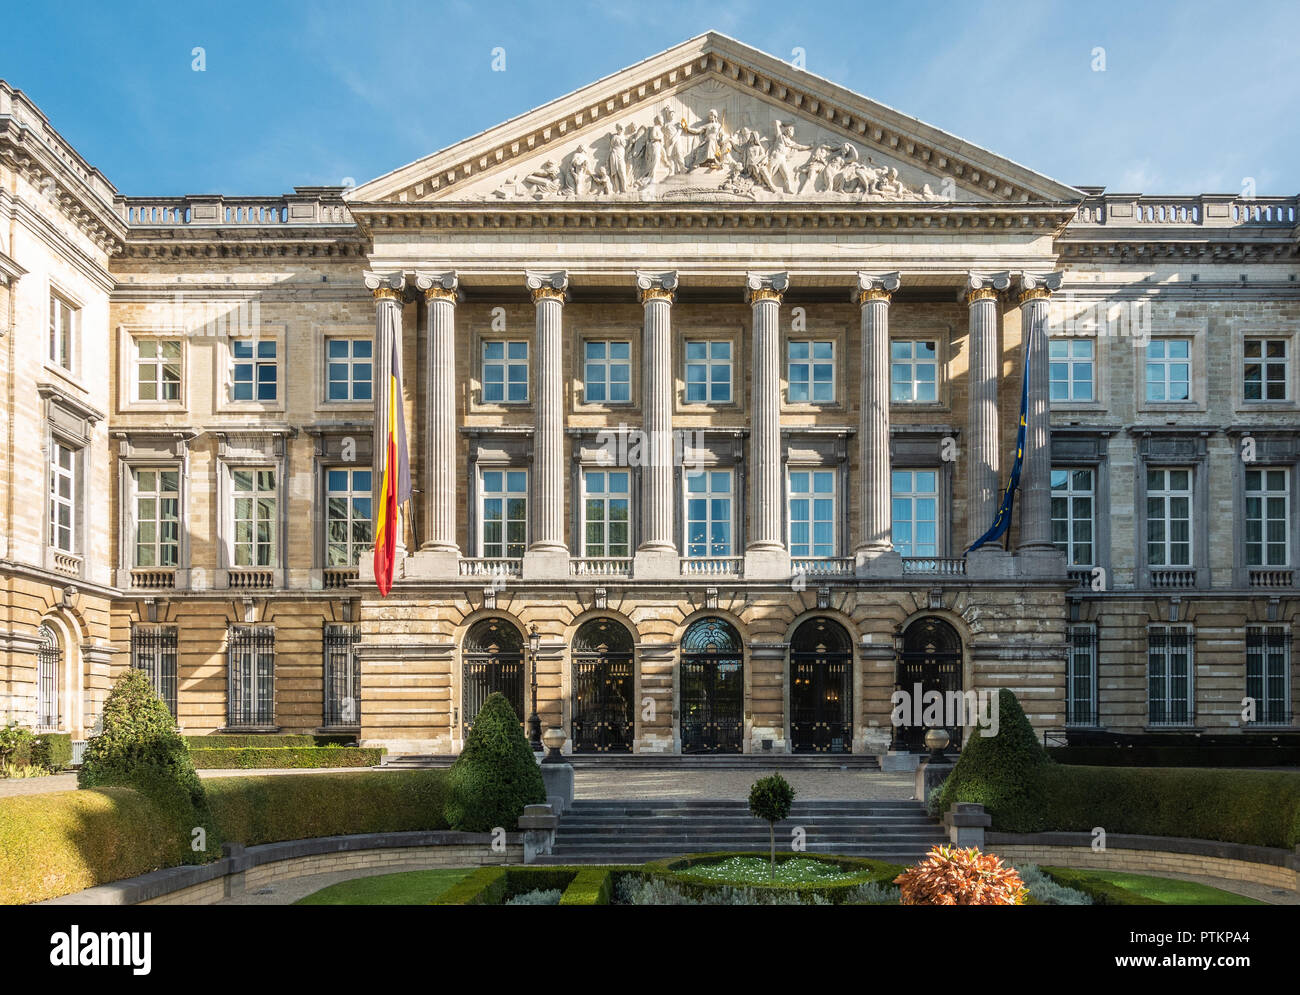 Brüssel, Belgien - 26. September 2018: Nahaufnahme der vorderen Fassade des belgischen Parlaments im romanischen Stil mit Säulen und fresco Dreieck, und Belgi Stockfoto